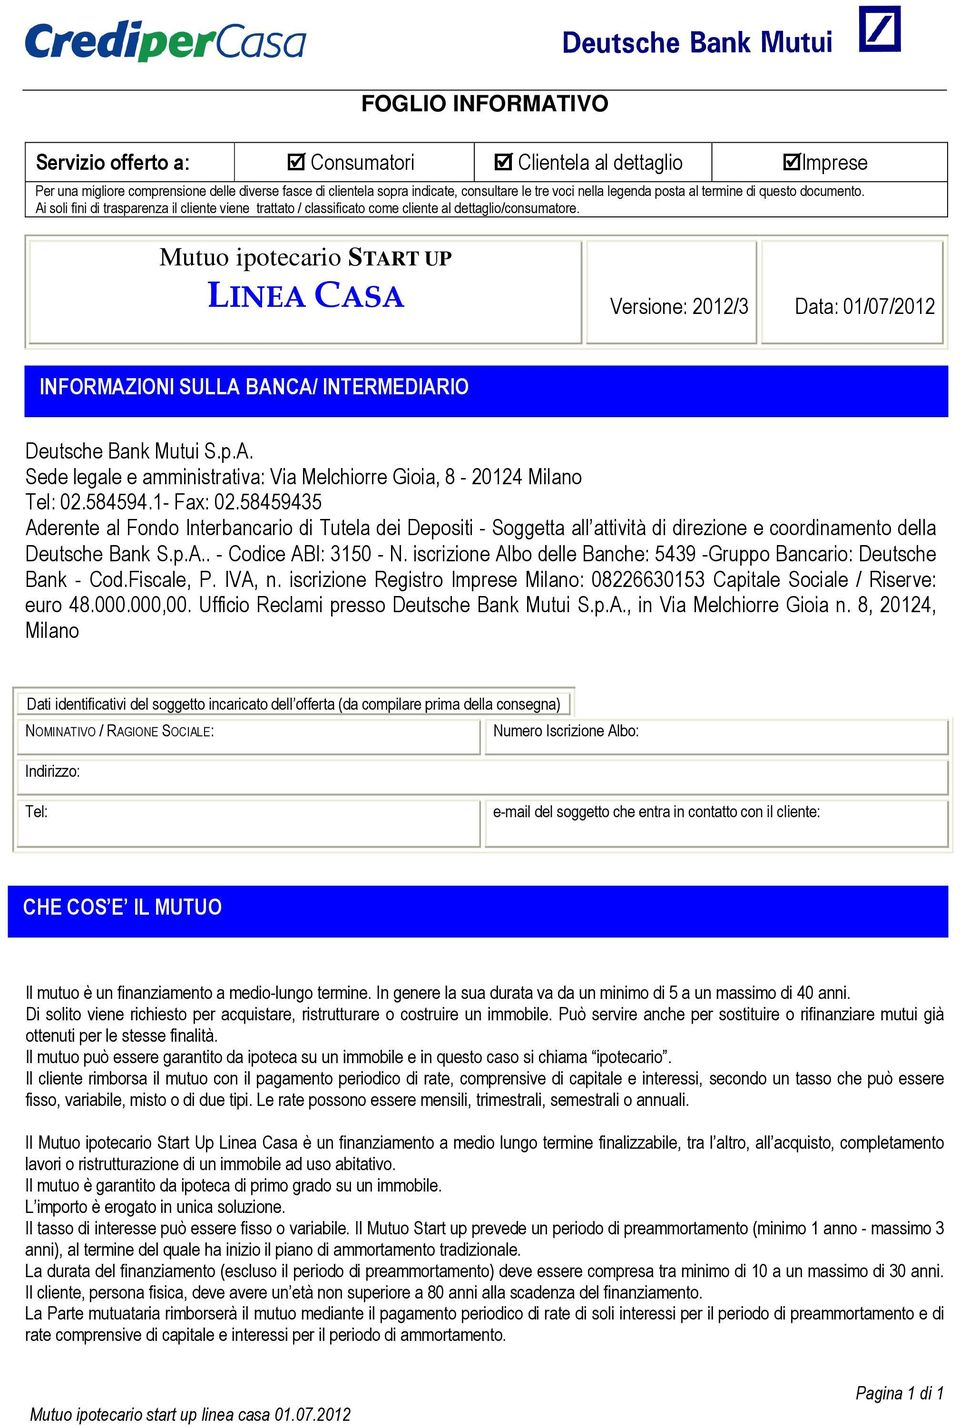 Mutuo ipotecario START UP LINEA CASA Versione: 2012/3 Data: 01/07/2012 INFORMAZIONI SULLA BANCA/ INTERMEDIARIO Deutsche Bank Mutui S.p.A. Sede legale e amministrativa: Via Melchiorre Gioia, 8-20124 Milano Tel: 02.